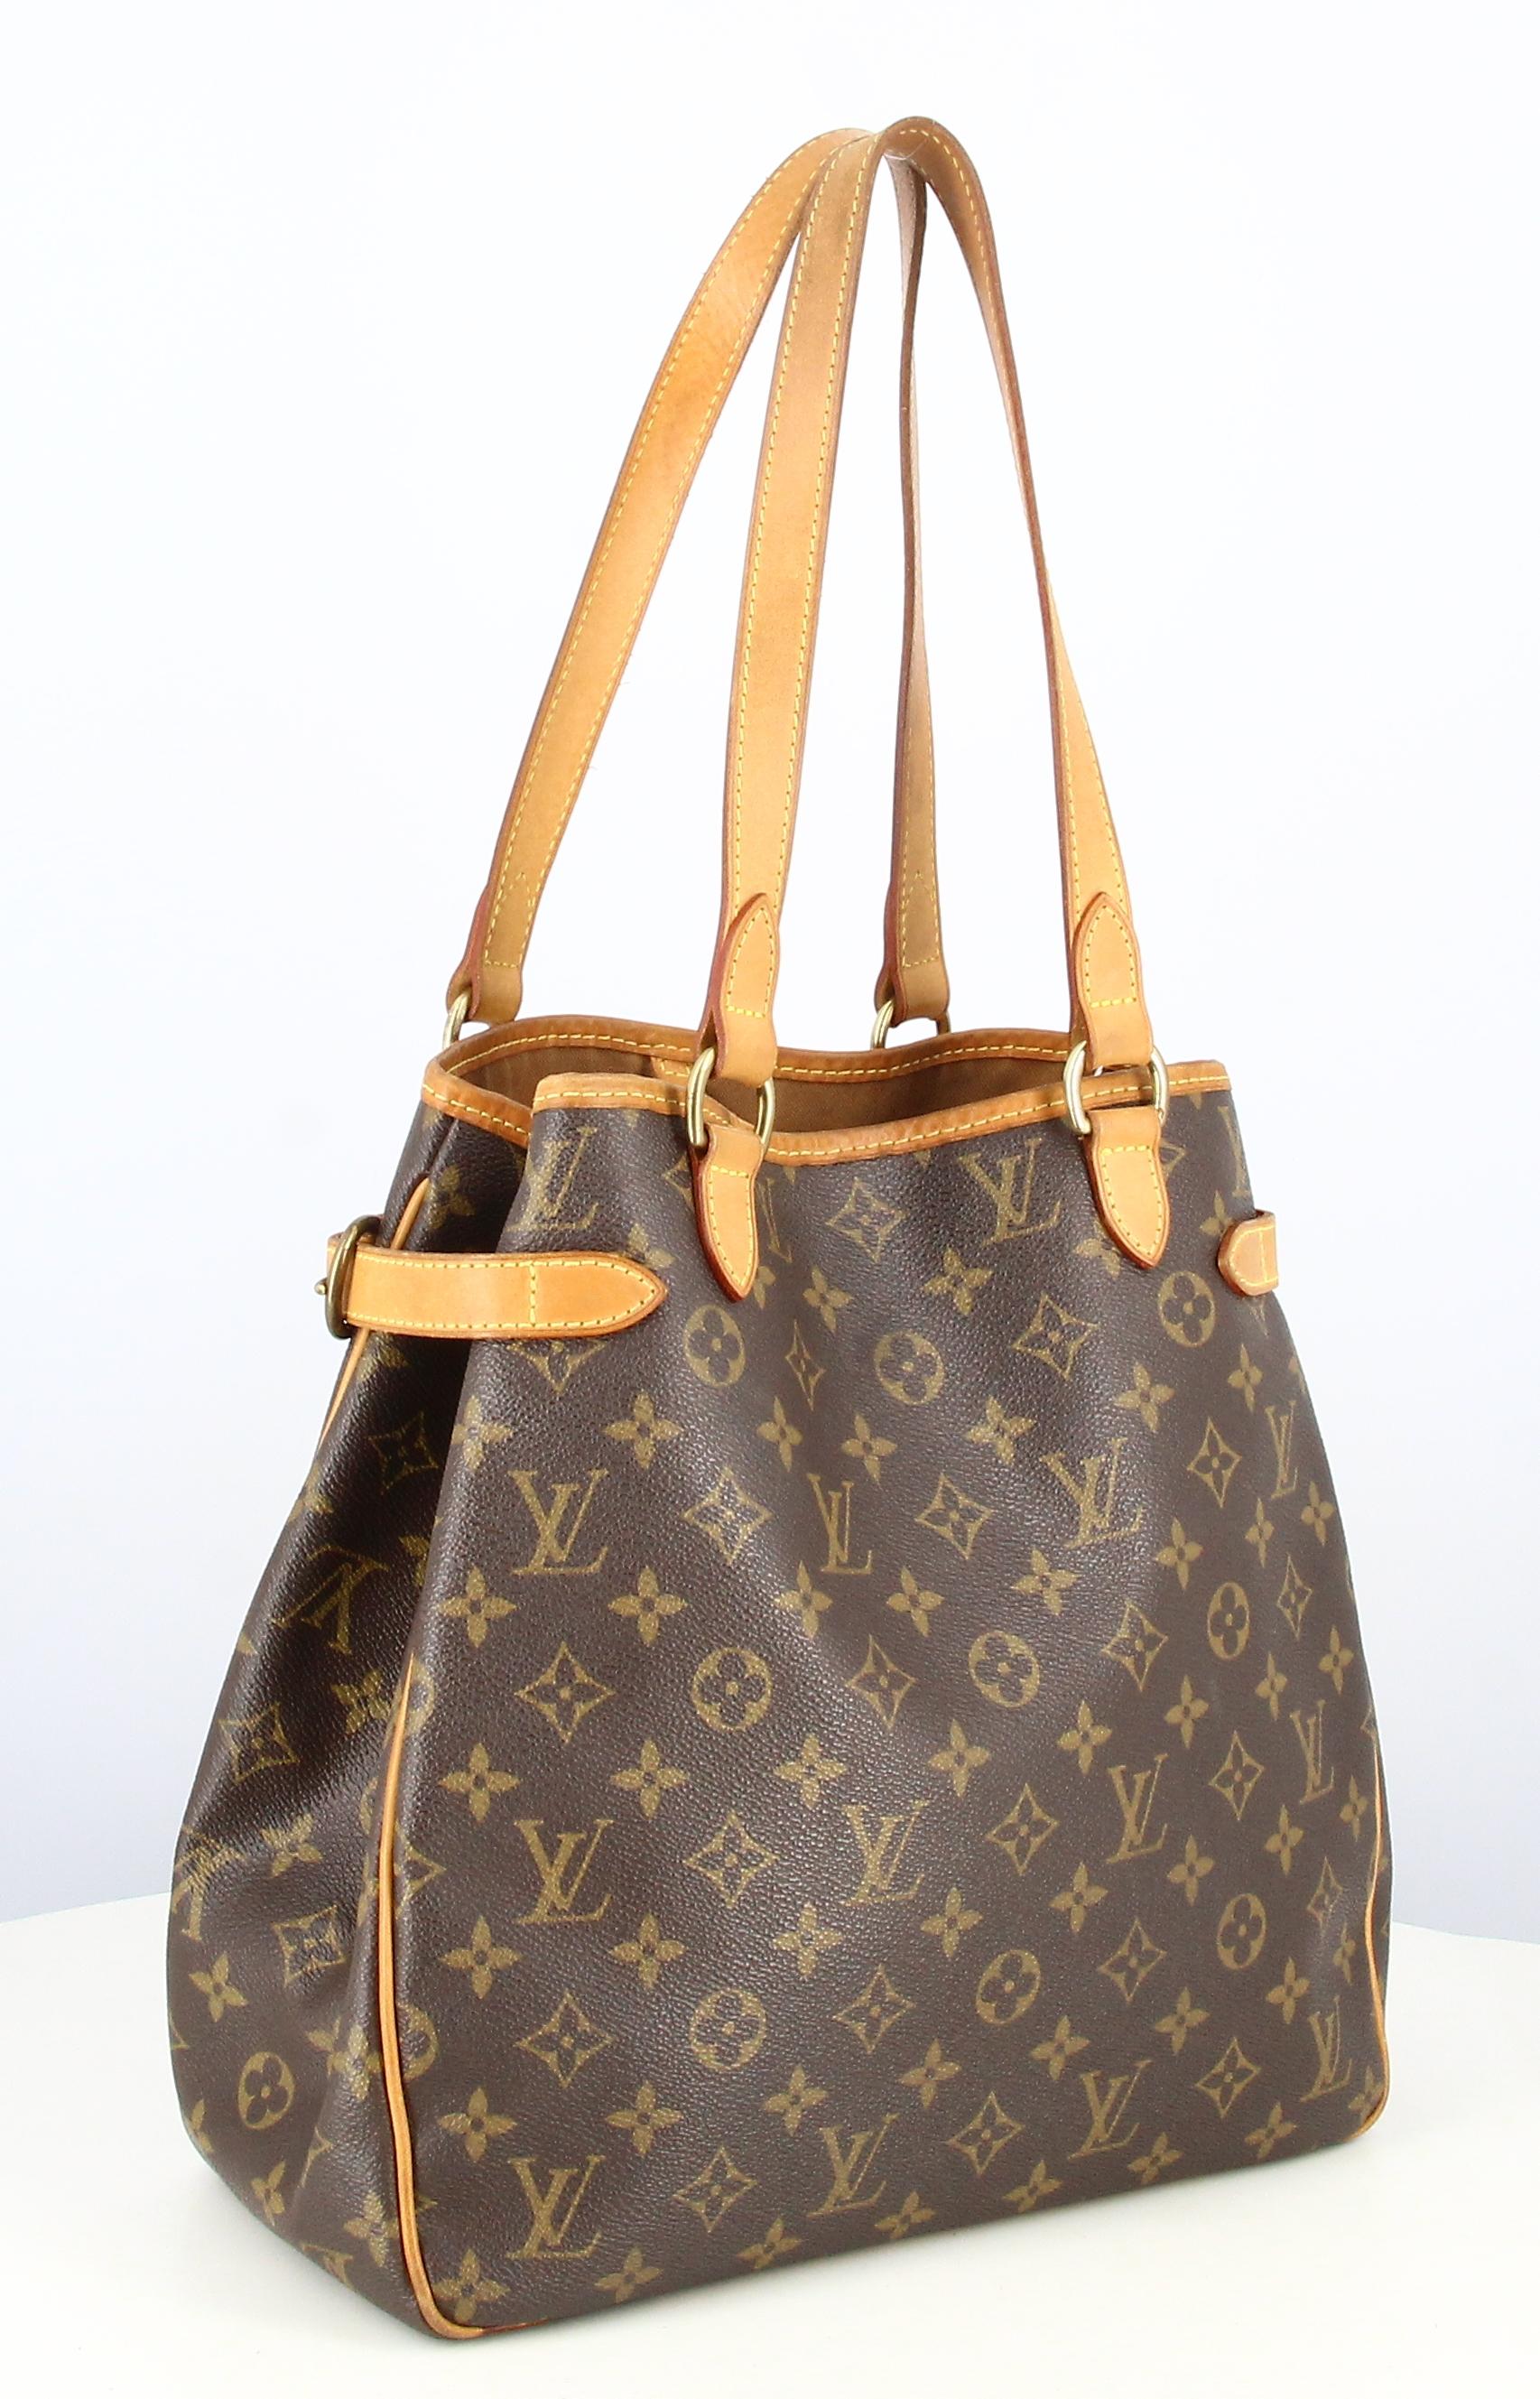 2008 Louis Vuitton Handbag Batignolles Vertical Tote Monogram Canvas In Good Condition For Sale In PARIS, FR